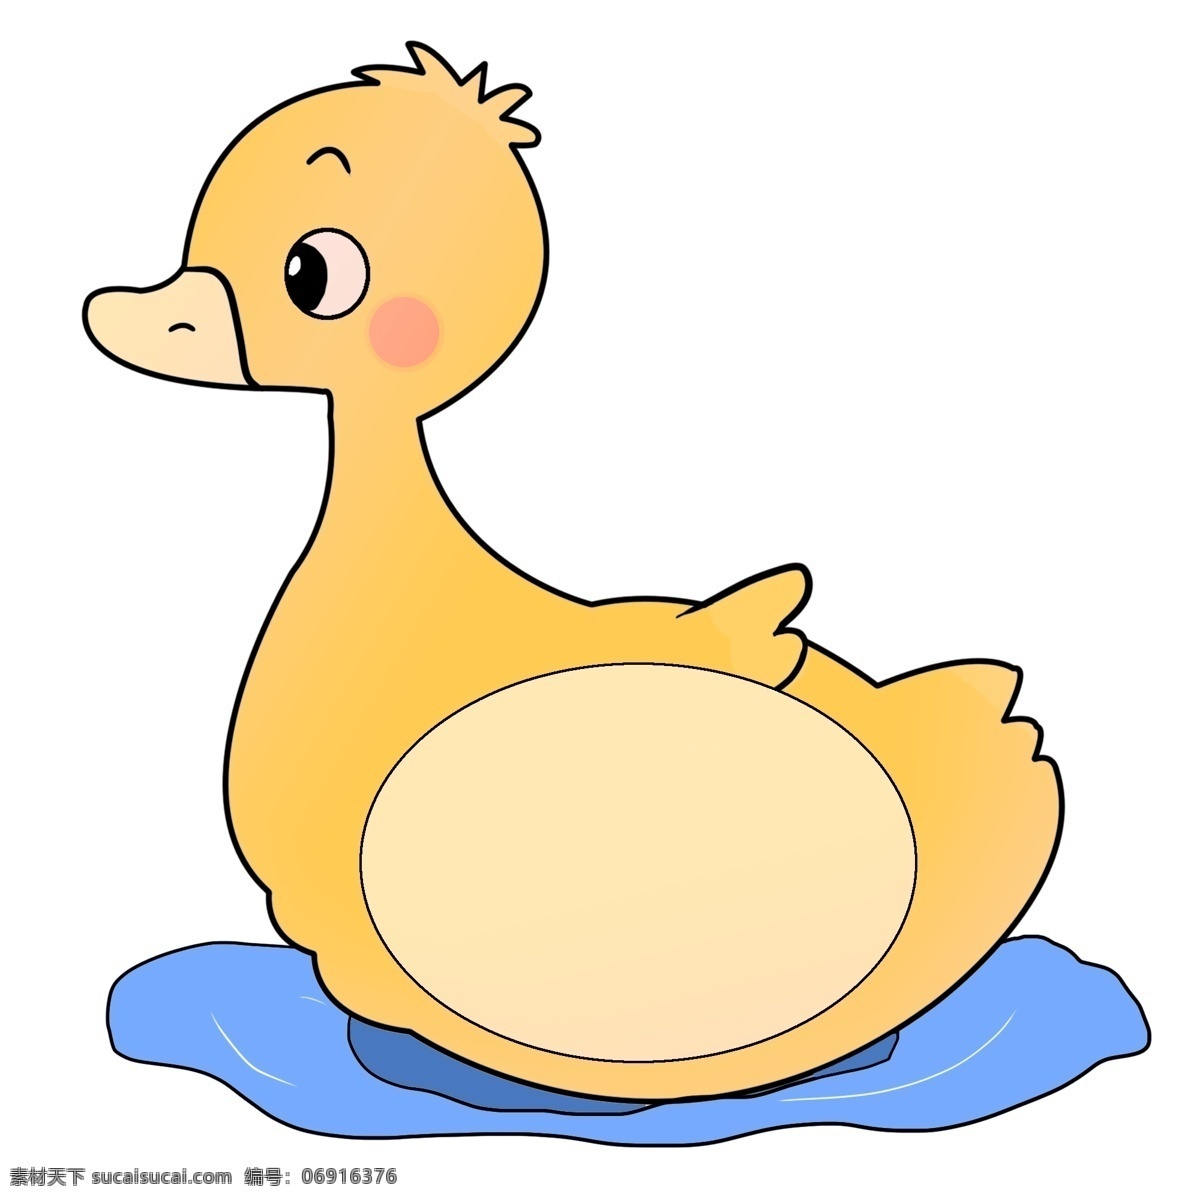 可爱 鸭子 游水 边框 卡通 可爱鸭子